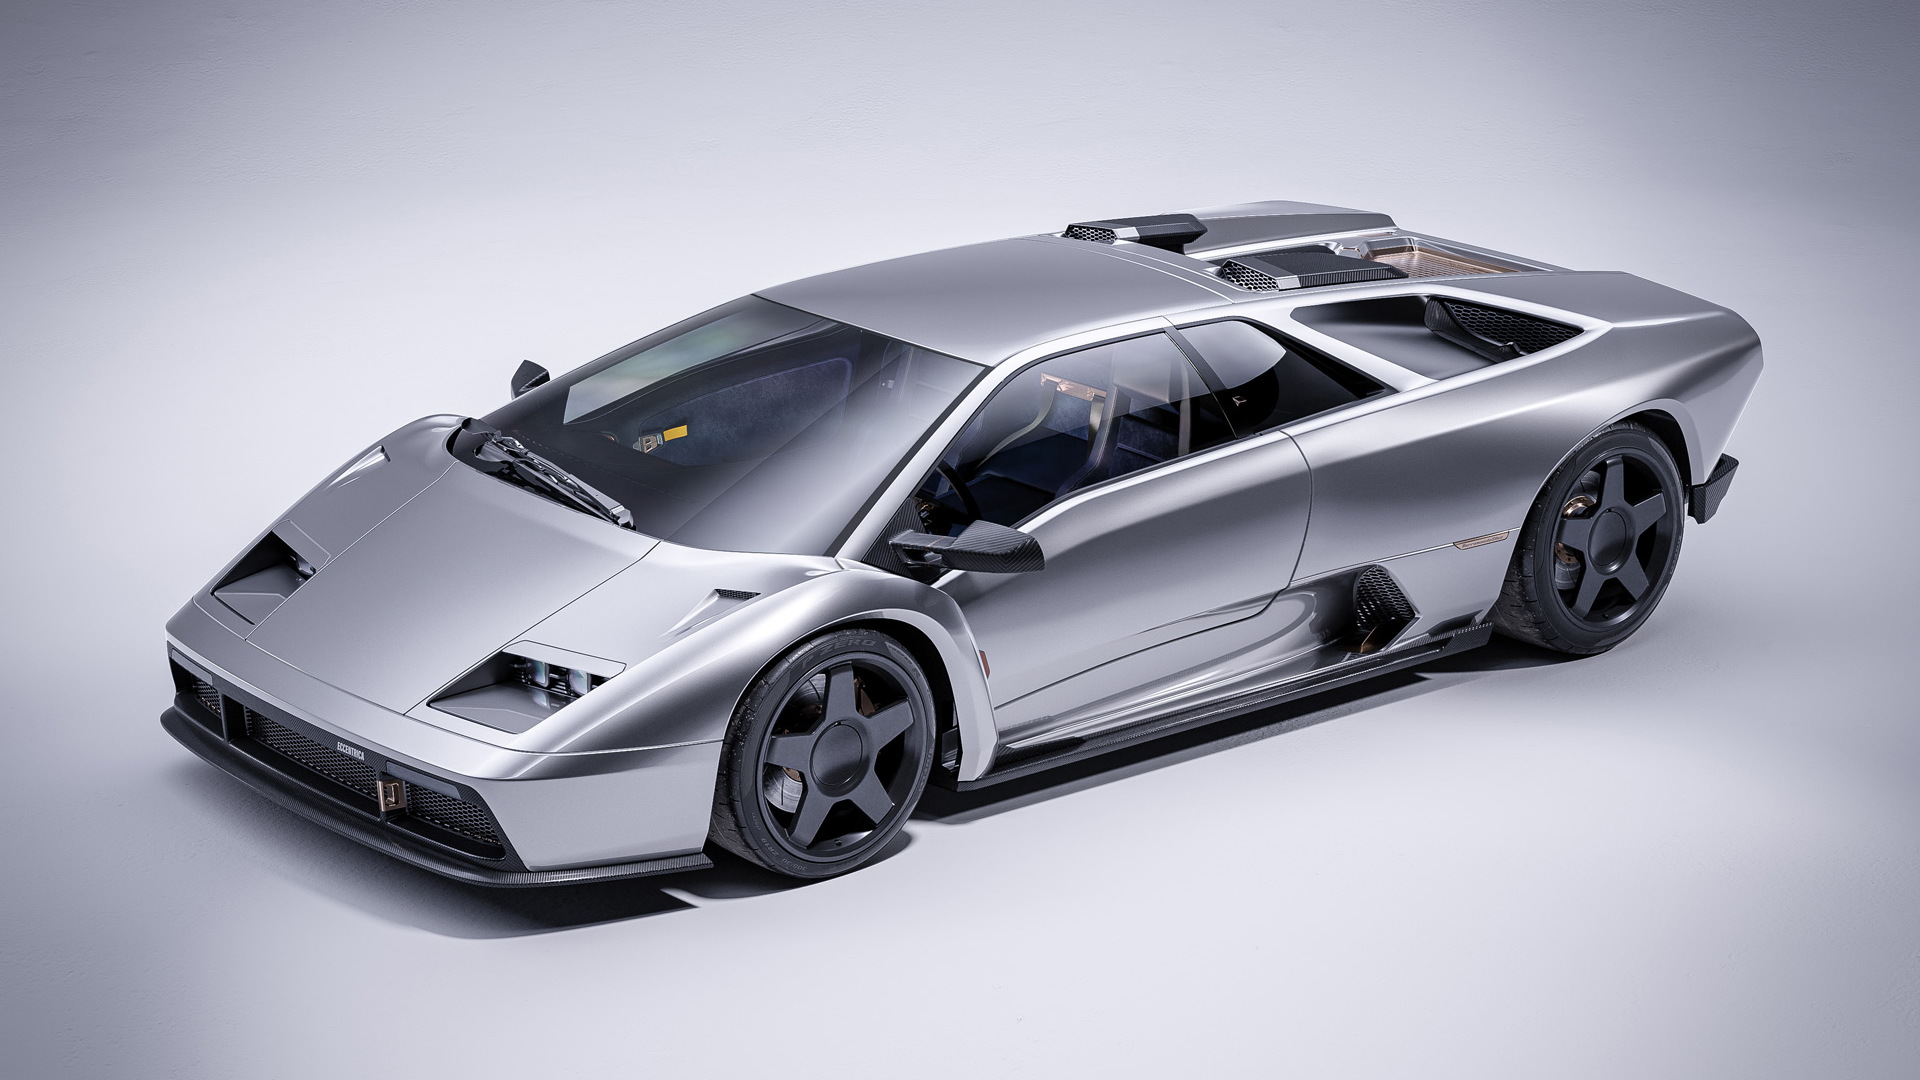 Lamborghini Diablo restomod by Eccentrica Cars